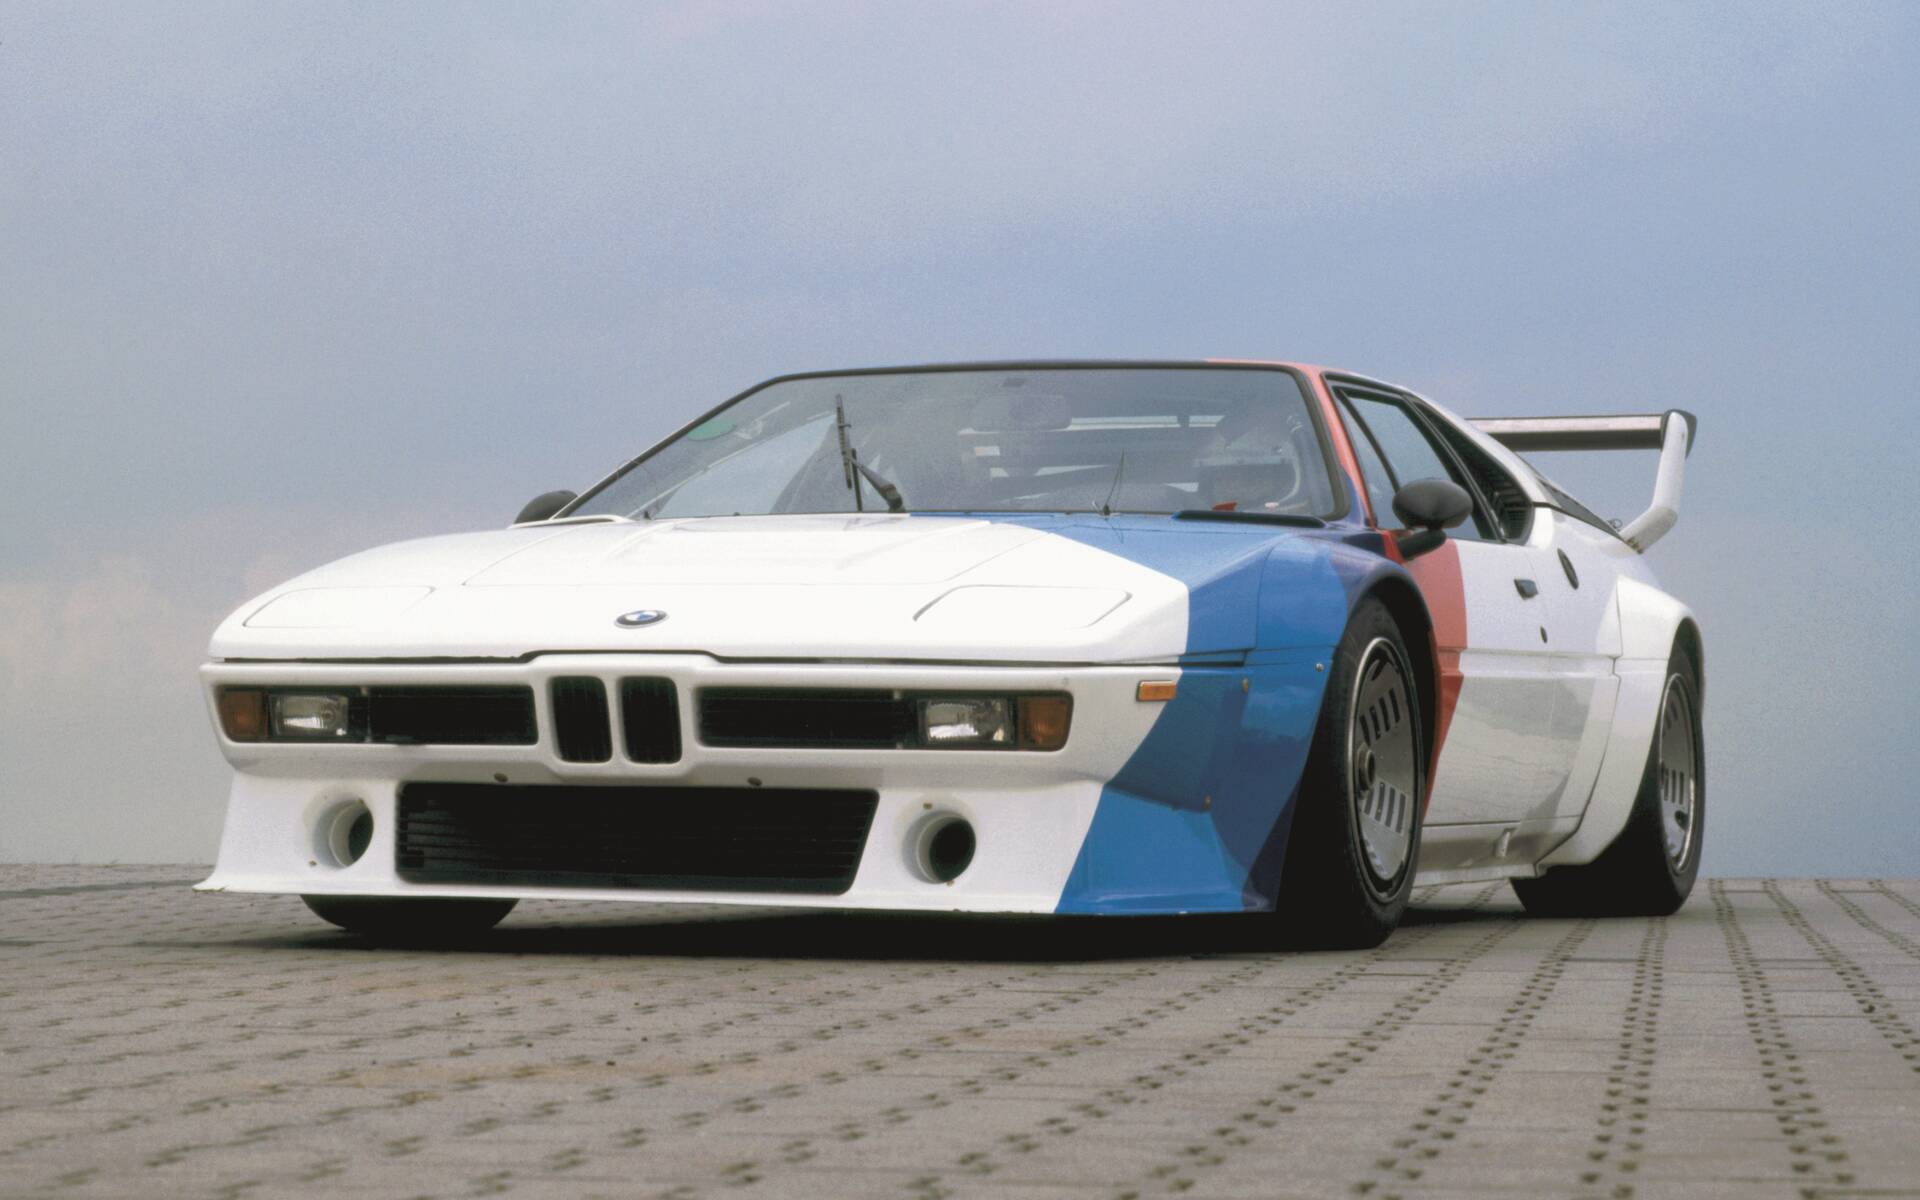 50 ans de voitures BMW M en images 527873-50-ans-de-voitures-bmw-m-en-images